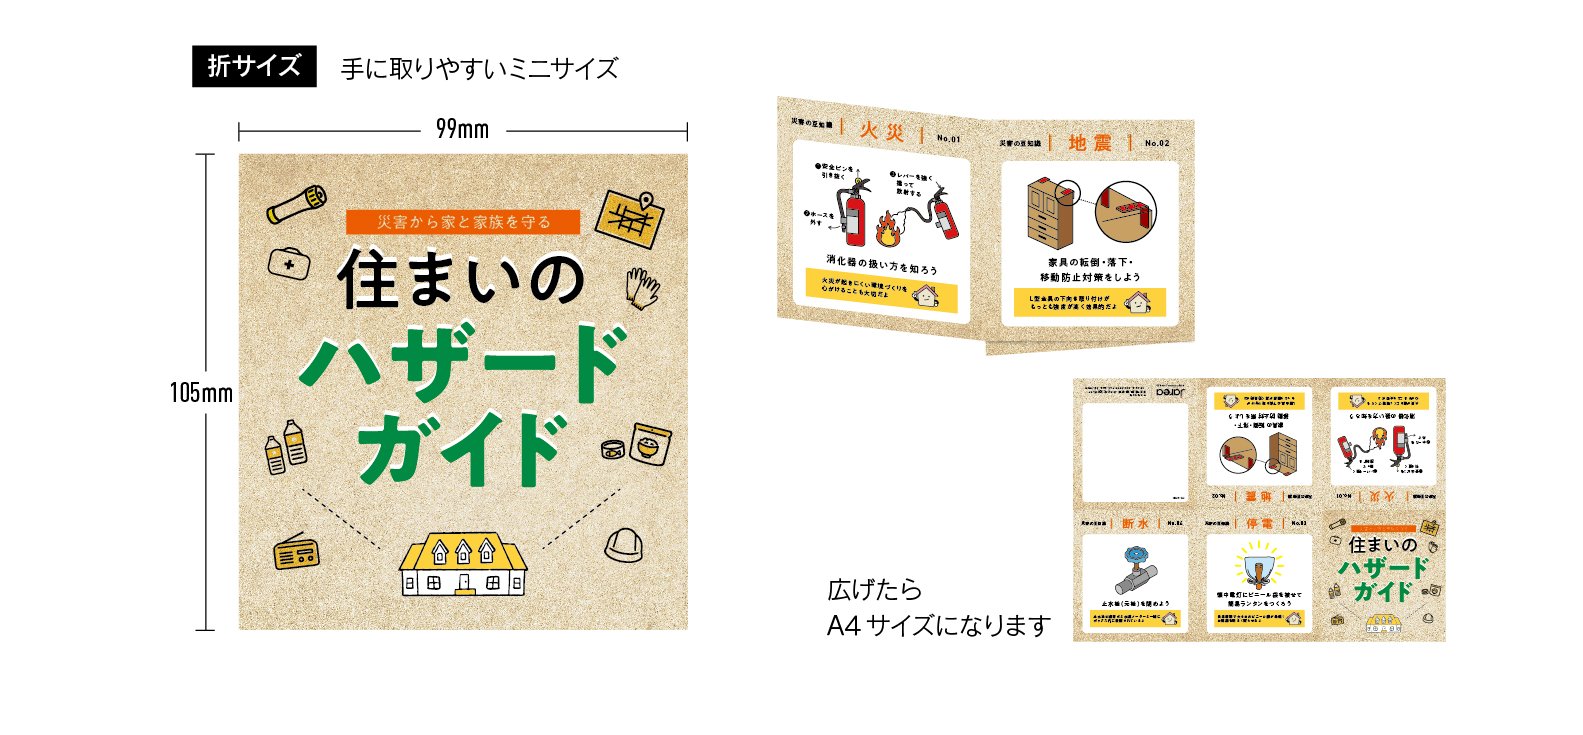 ノベルティ制作について福岡の広告代理店が解説イメージ5